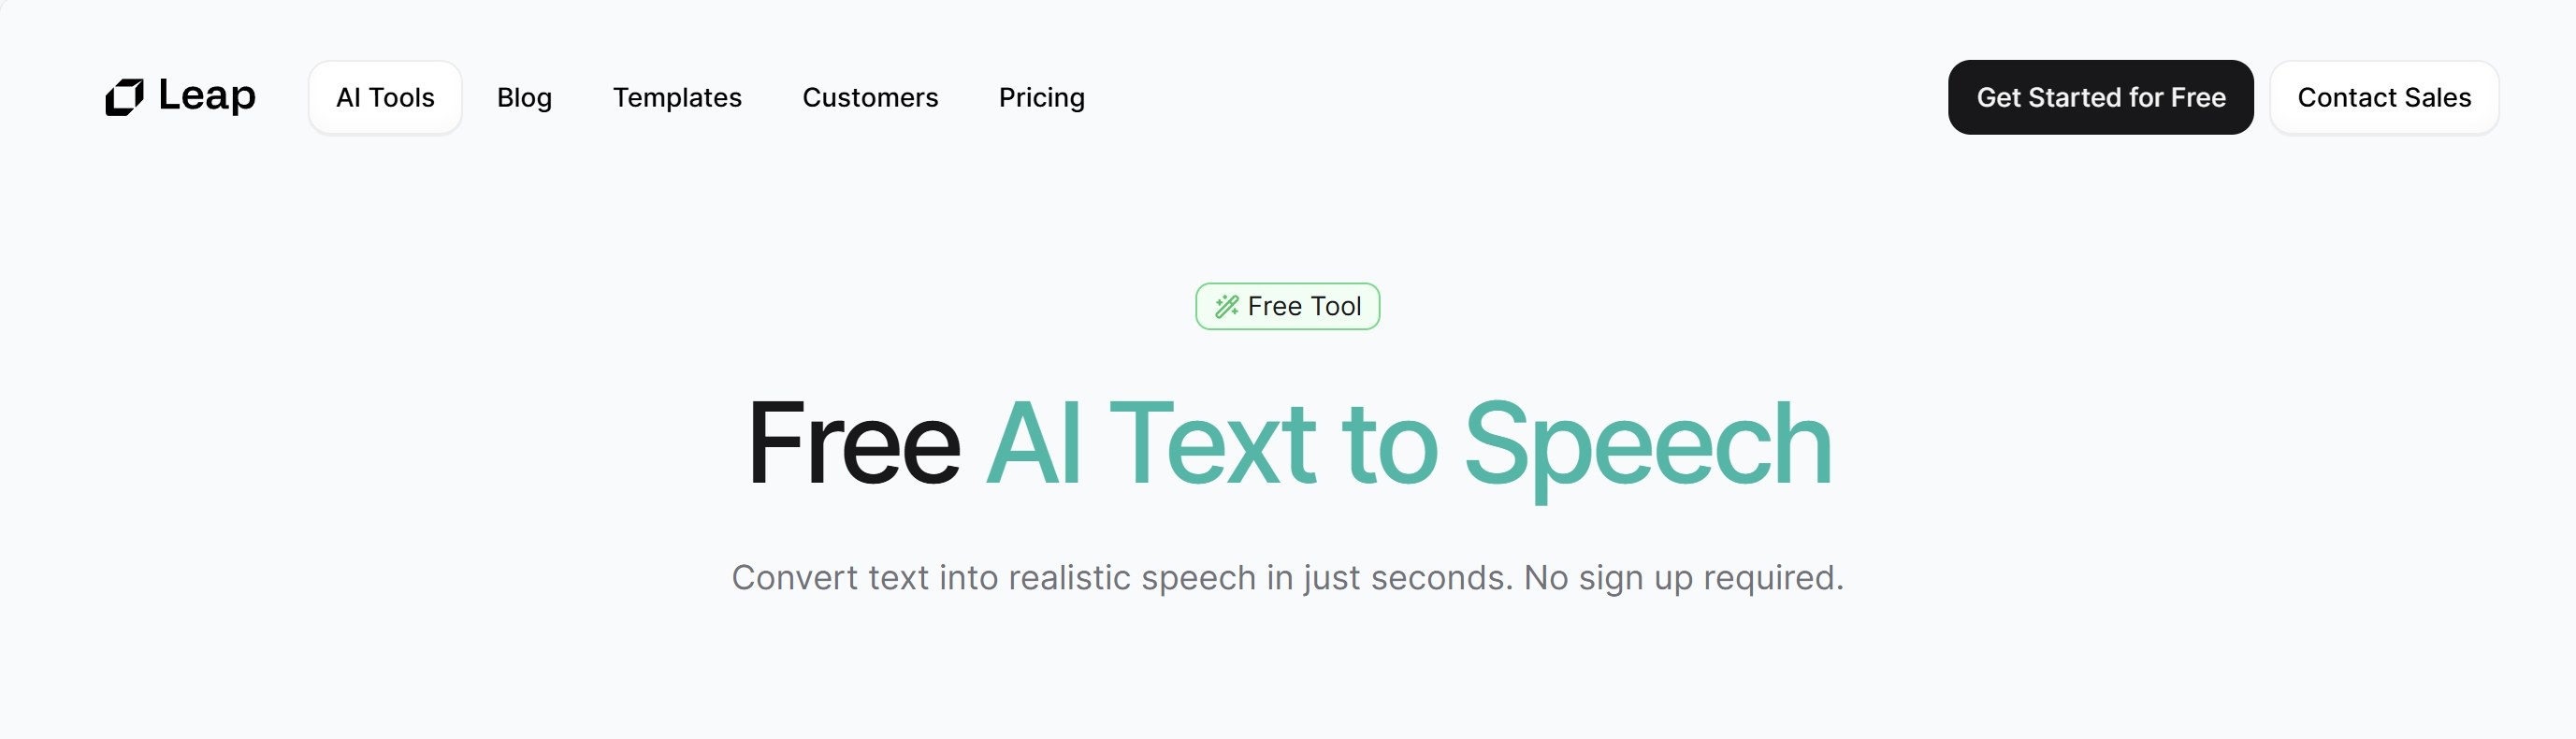 Leap.ai Free AI Text to Speech 